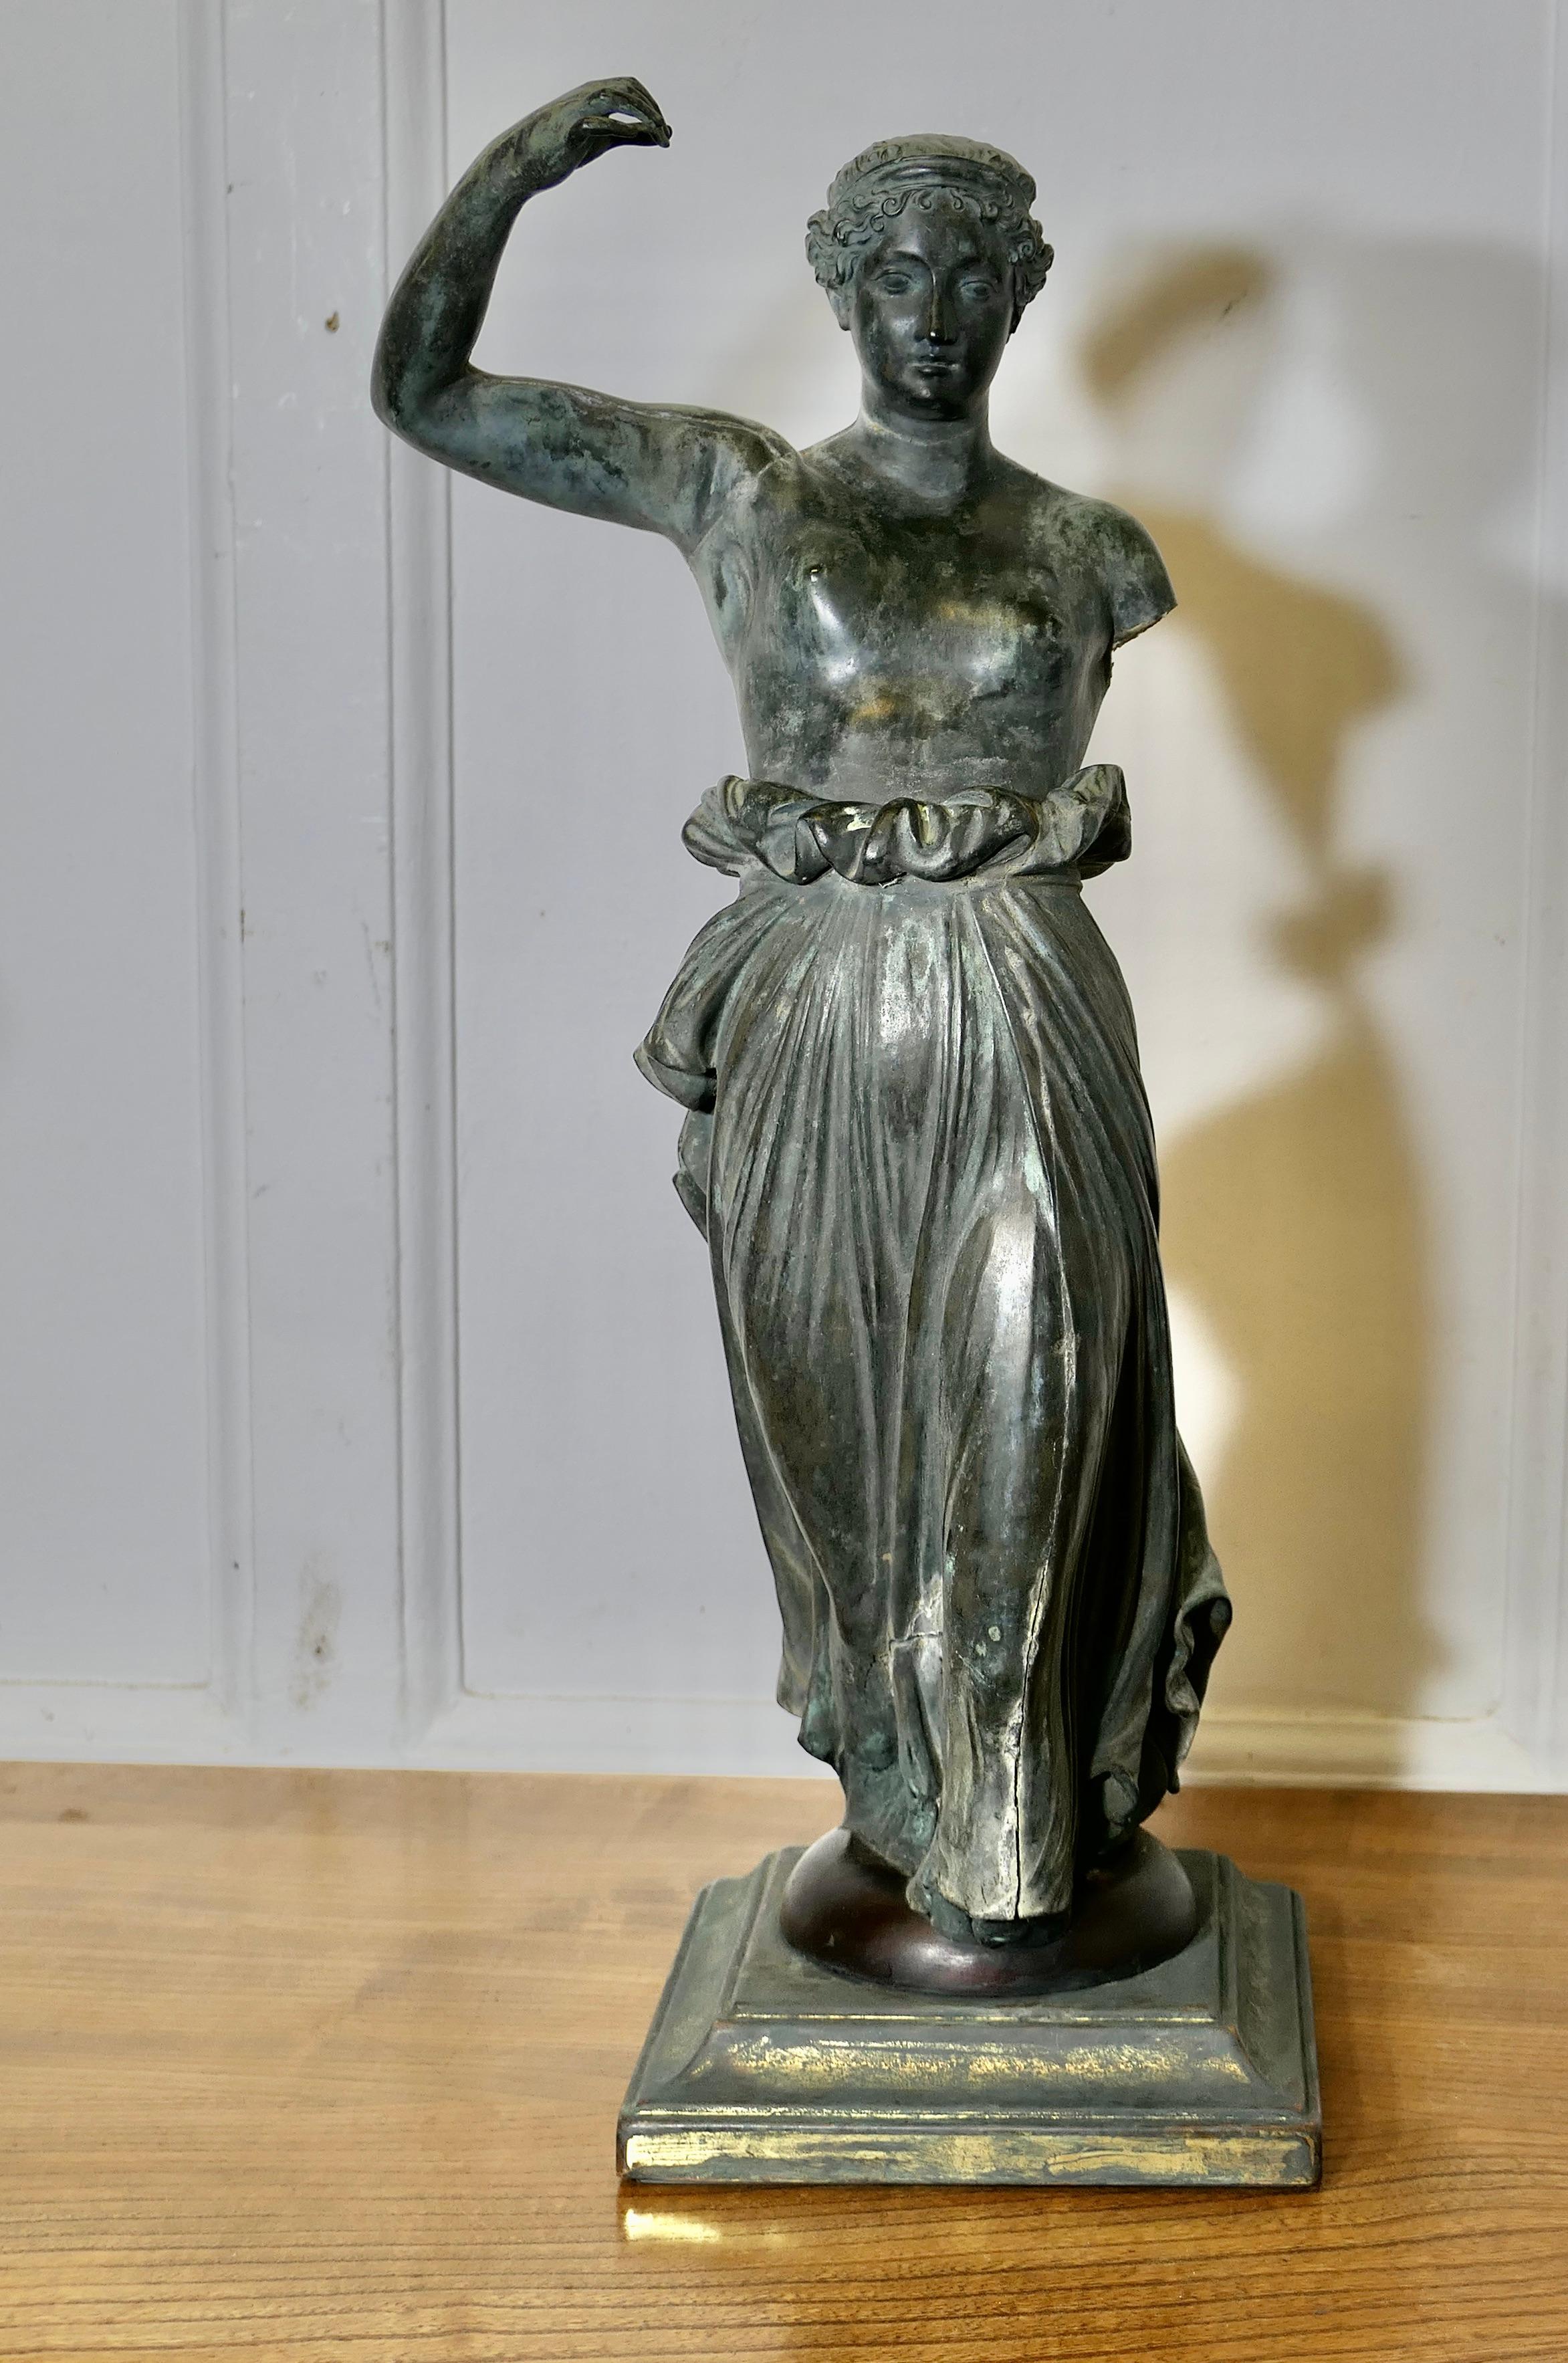 Neoklassische Bronzestatue der Hebe, der griechischen Göttin der Jugend

Die schöne Bronzestatue, die auf einem quadratischen Sockel steht, ist  ist vollständig dreidimensional und sieht von allen Seiten sehr attraktiv aus
Hebe hat eine herrliche